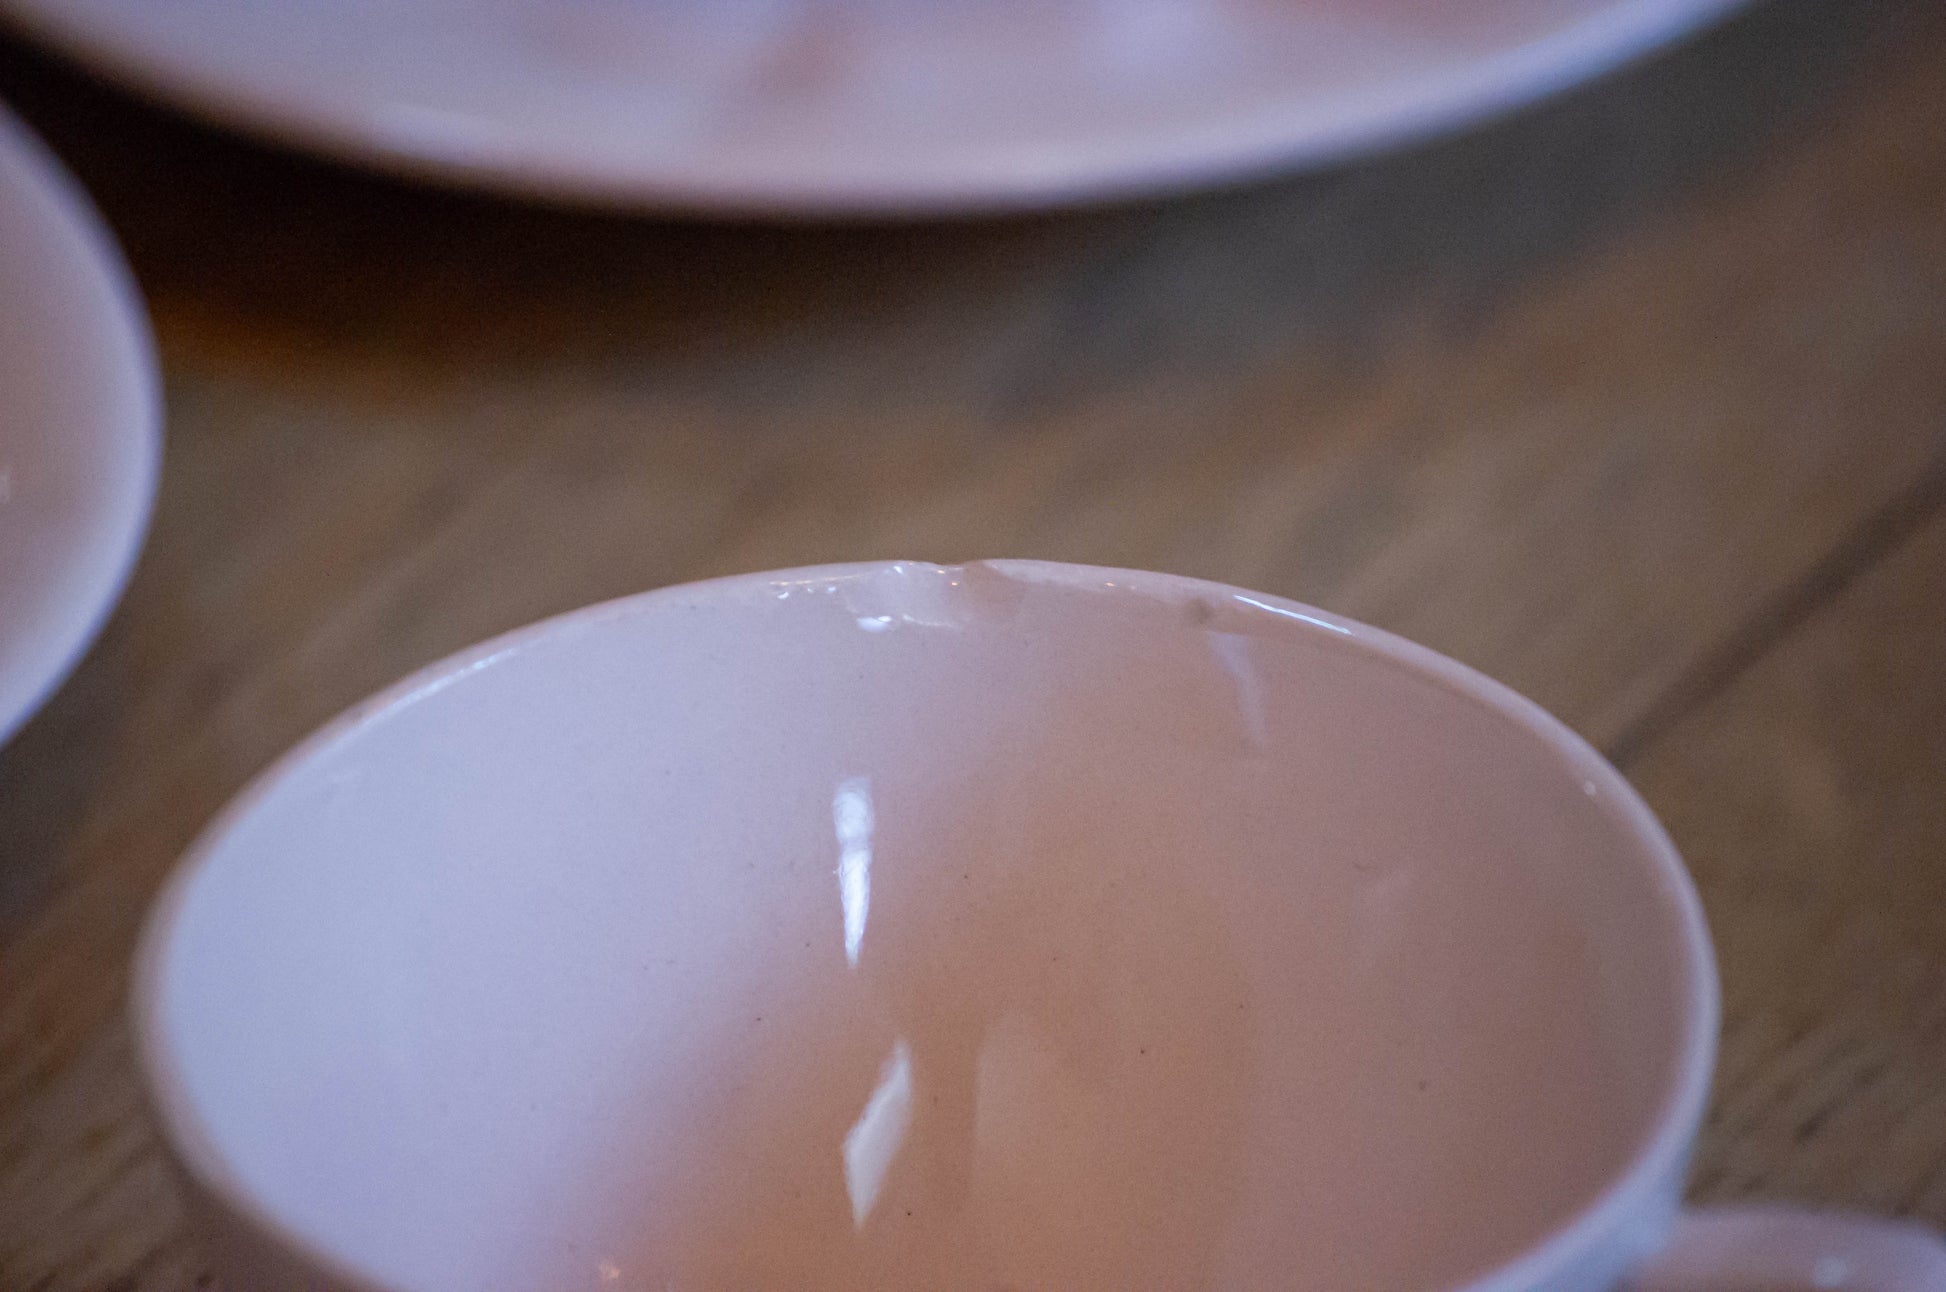 Ensemble à thé Digoin, une théière, un pot à lait, un sucrier et 12 tasses et sous tasses. Très bon état général, rose pale, quelques légers éclats, visible sur une photo.